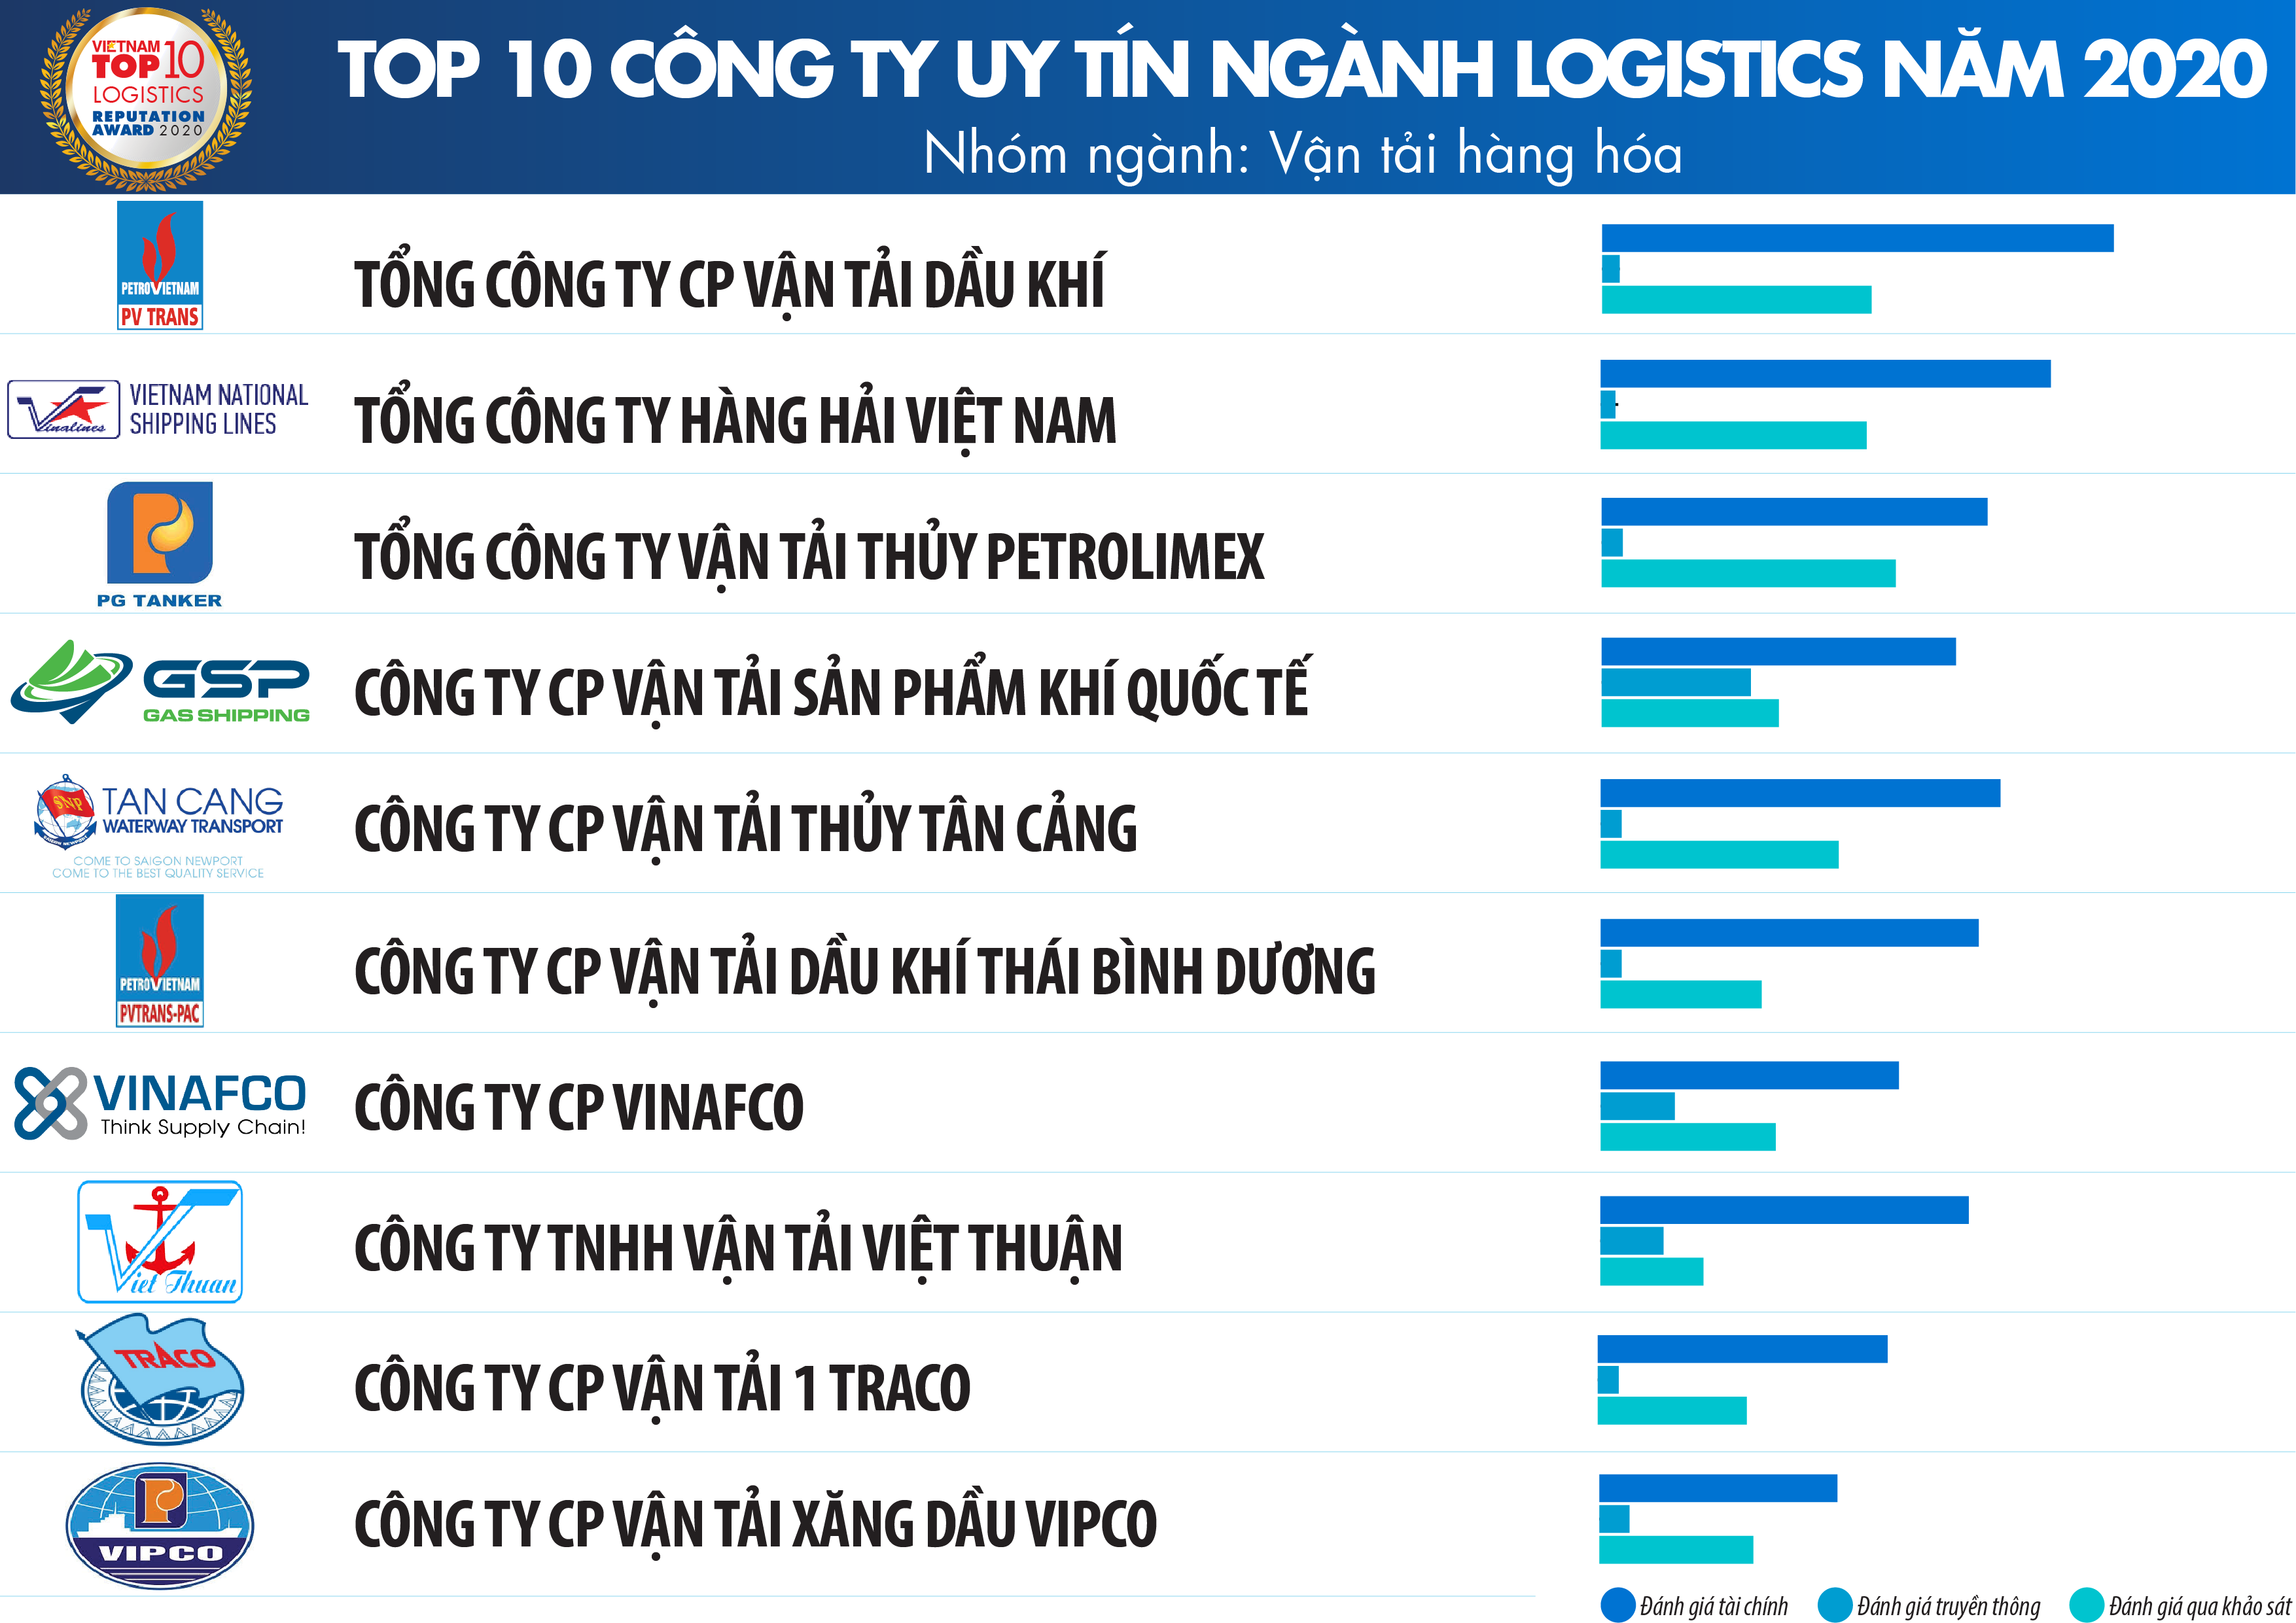 Top 10 Công ty uy tín ngành Logistics năm 2020